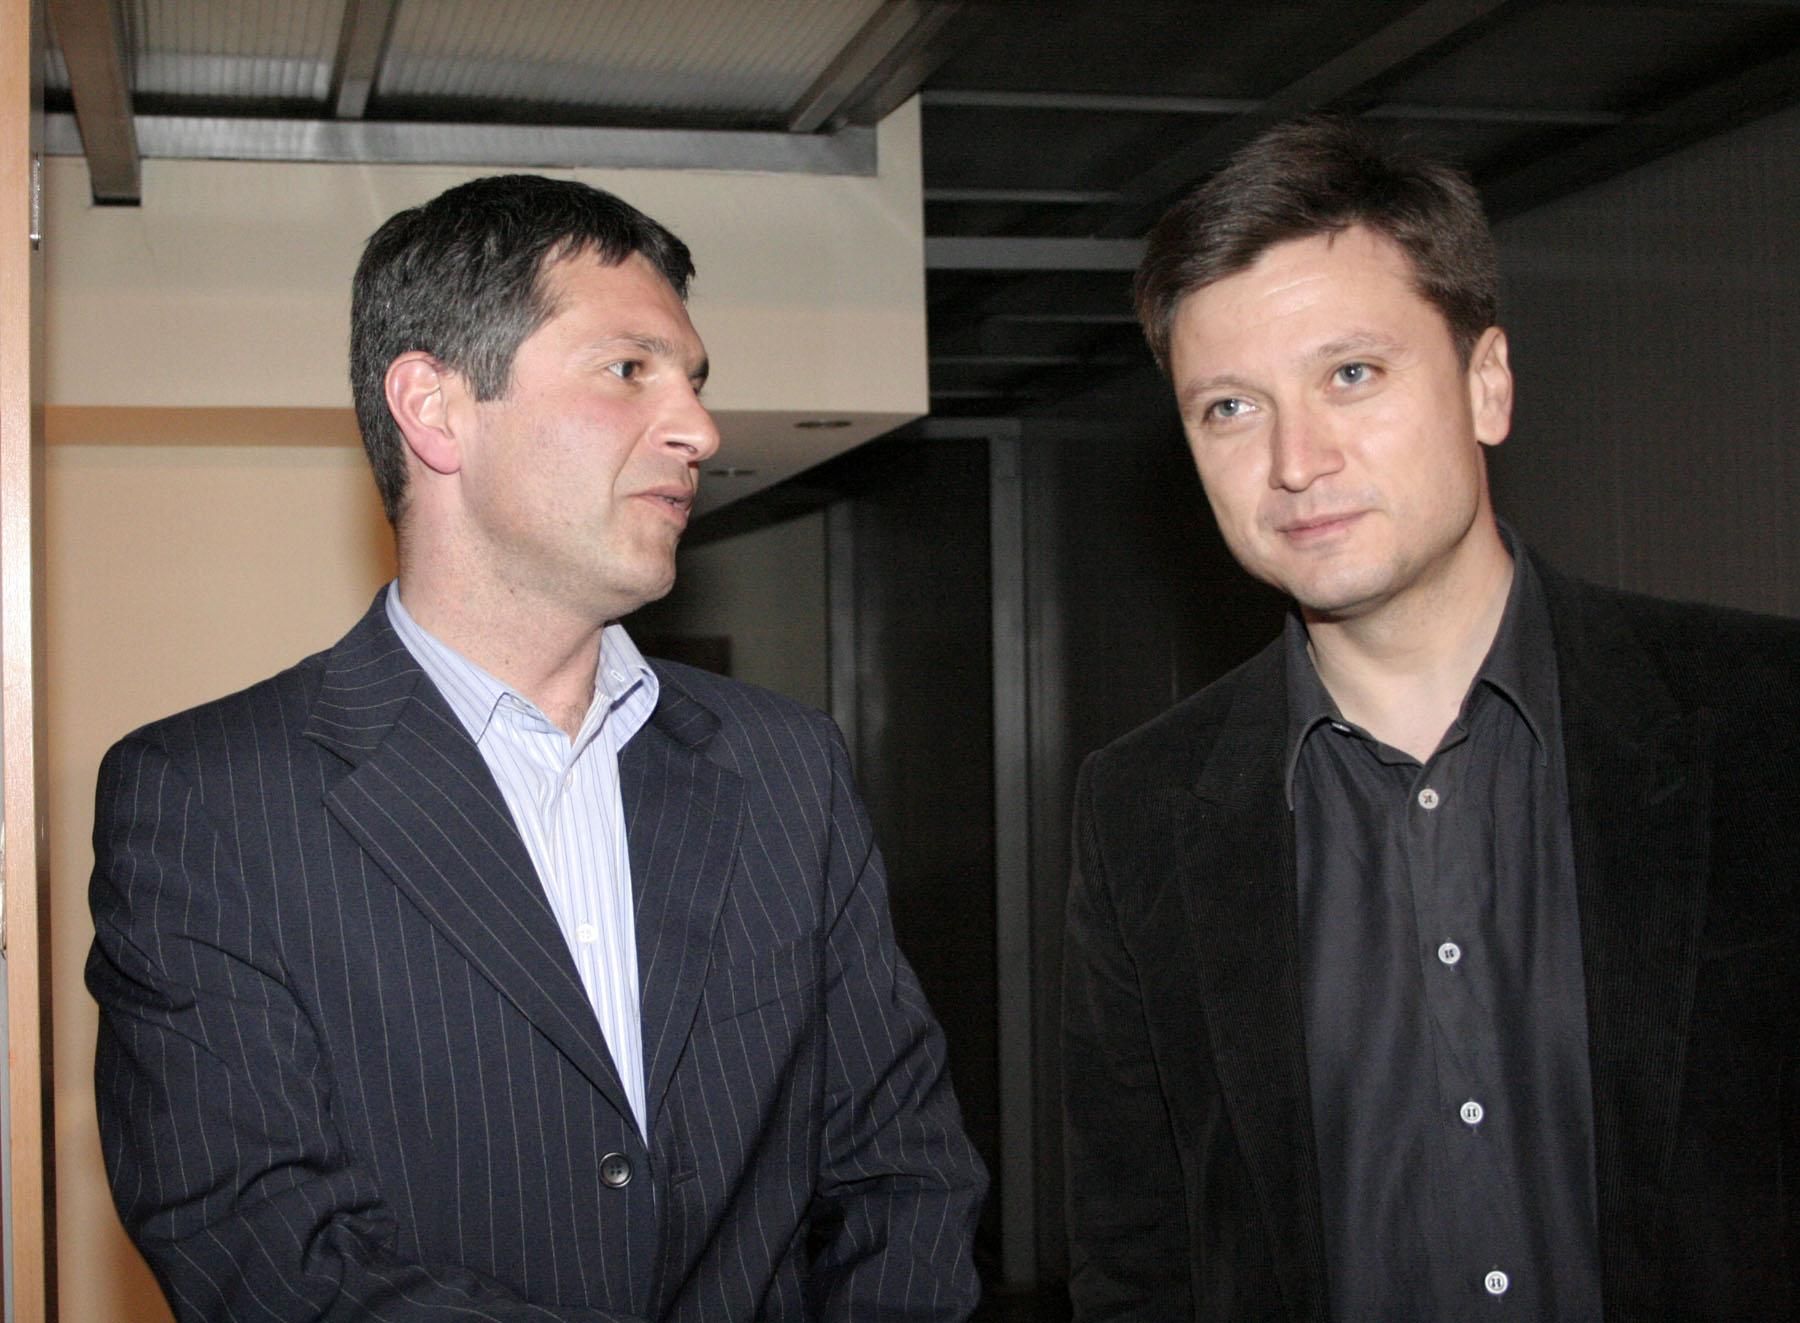 1 април 2006 г. - Милен Цветков с тогавашния шеф в Нова телевизия Павел Станчев на третия рожден ден на "Господари на ефира"